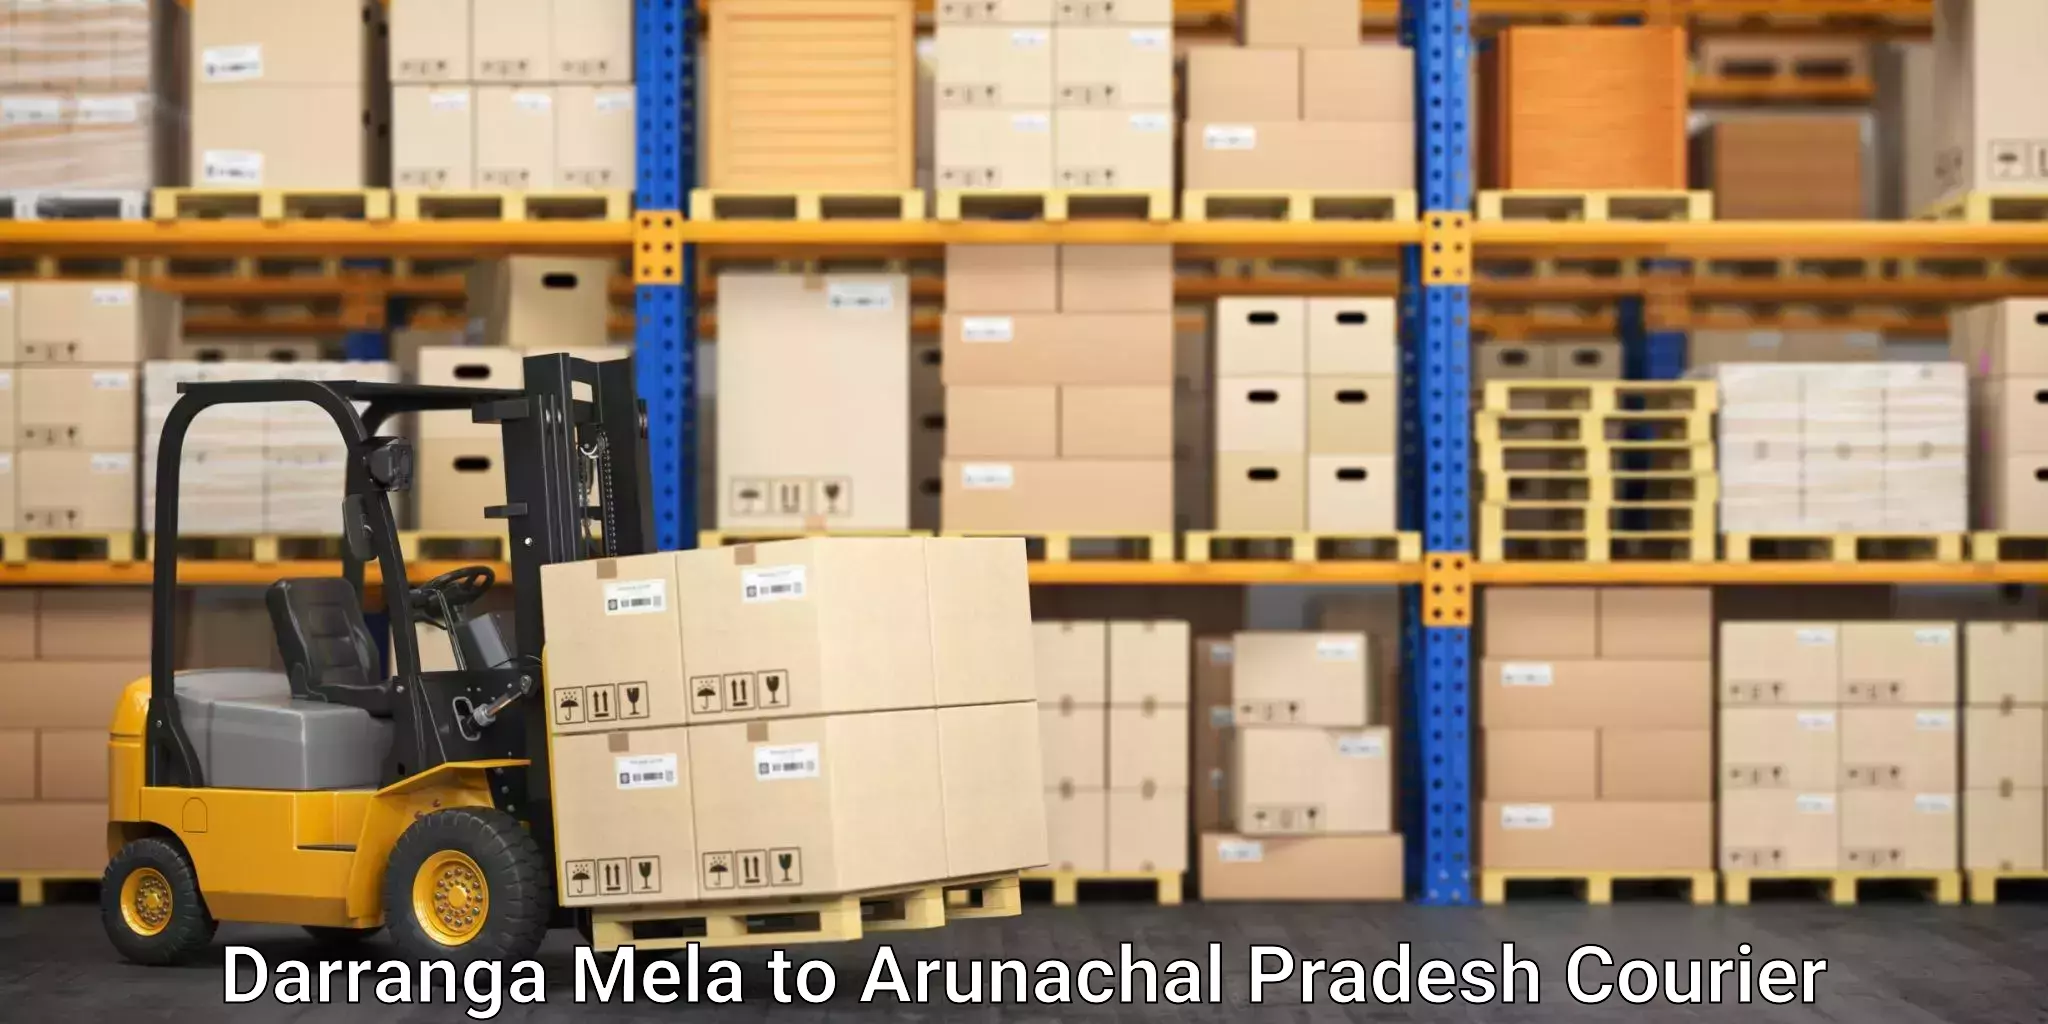 Flexible parcel services Darranga Mela to Itanagar